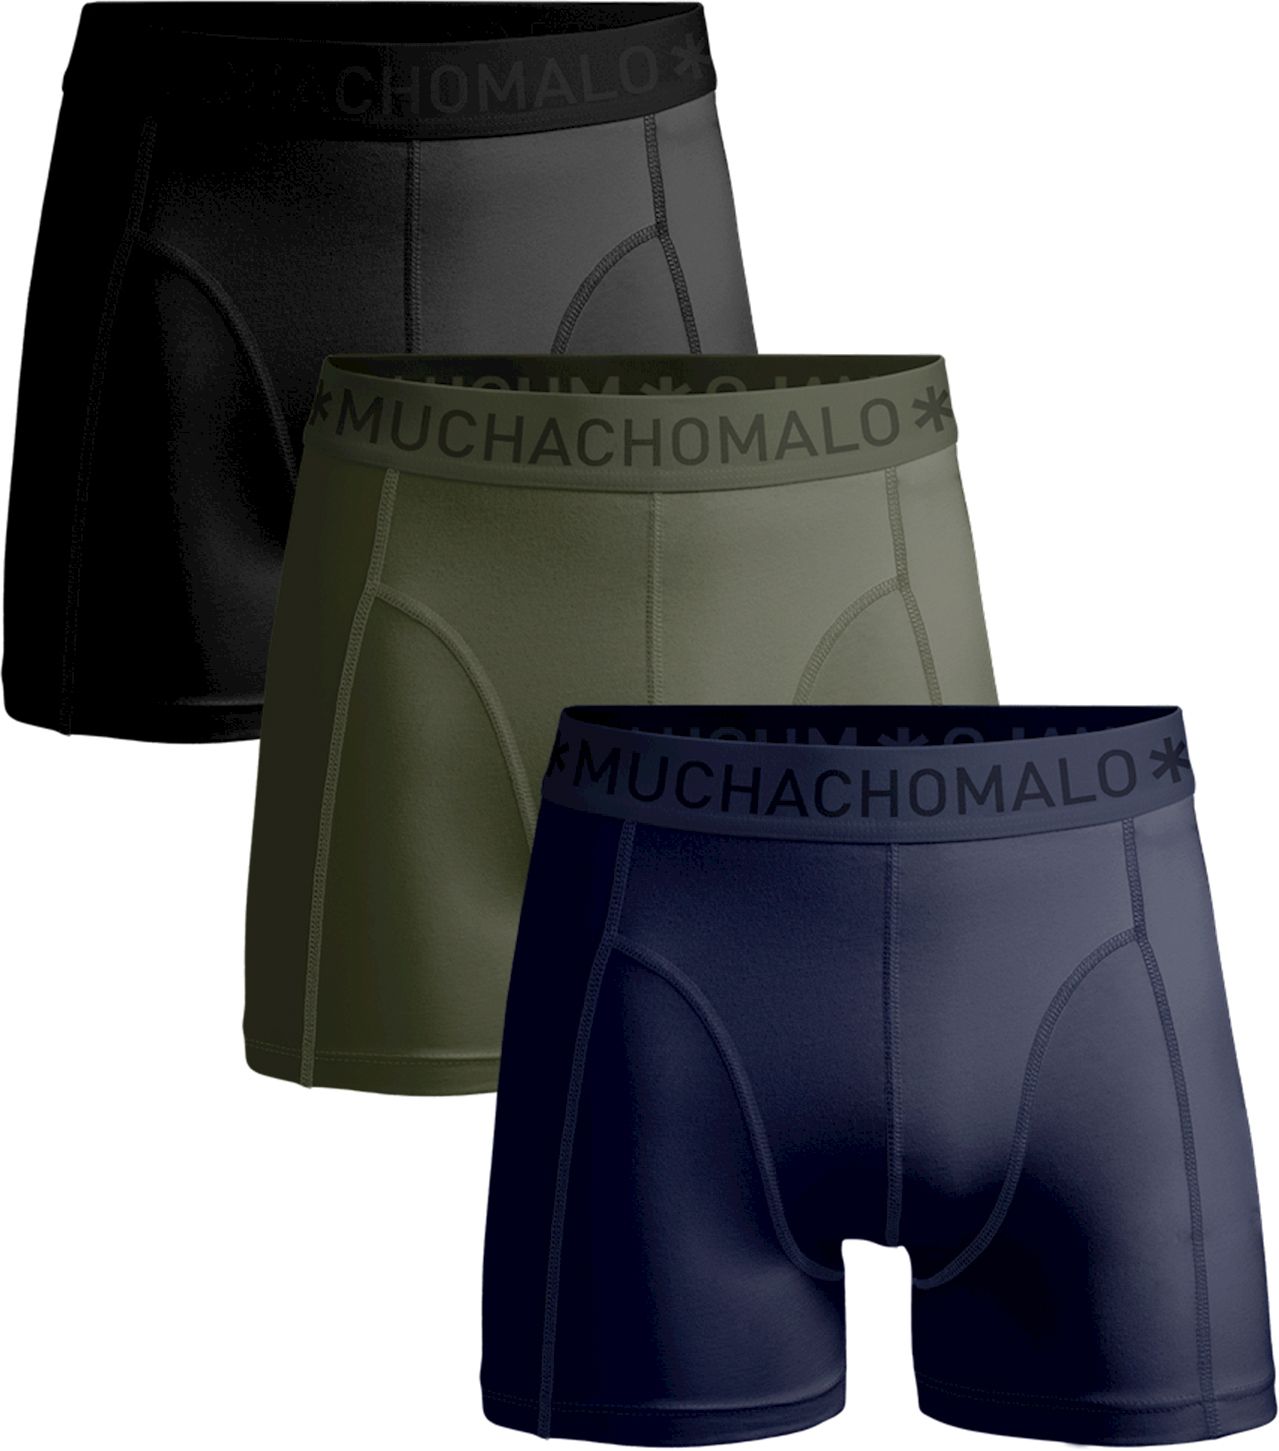 Muchachomalo Boxershorts 3-Pack Microfiber Black Dark Blue Dark Green size XL